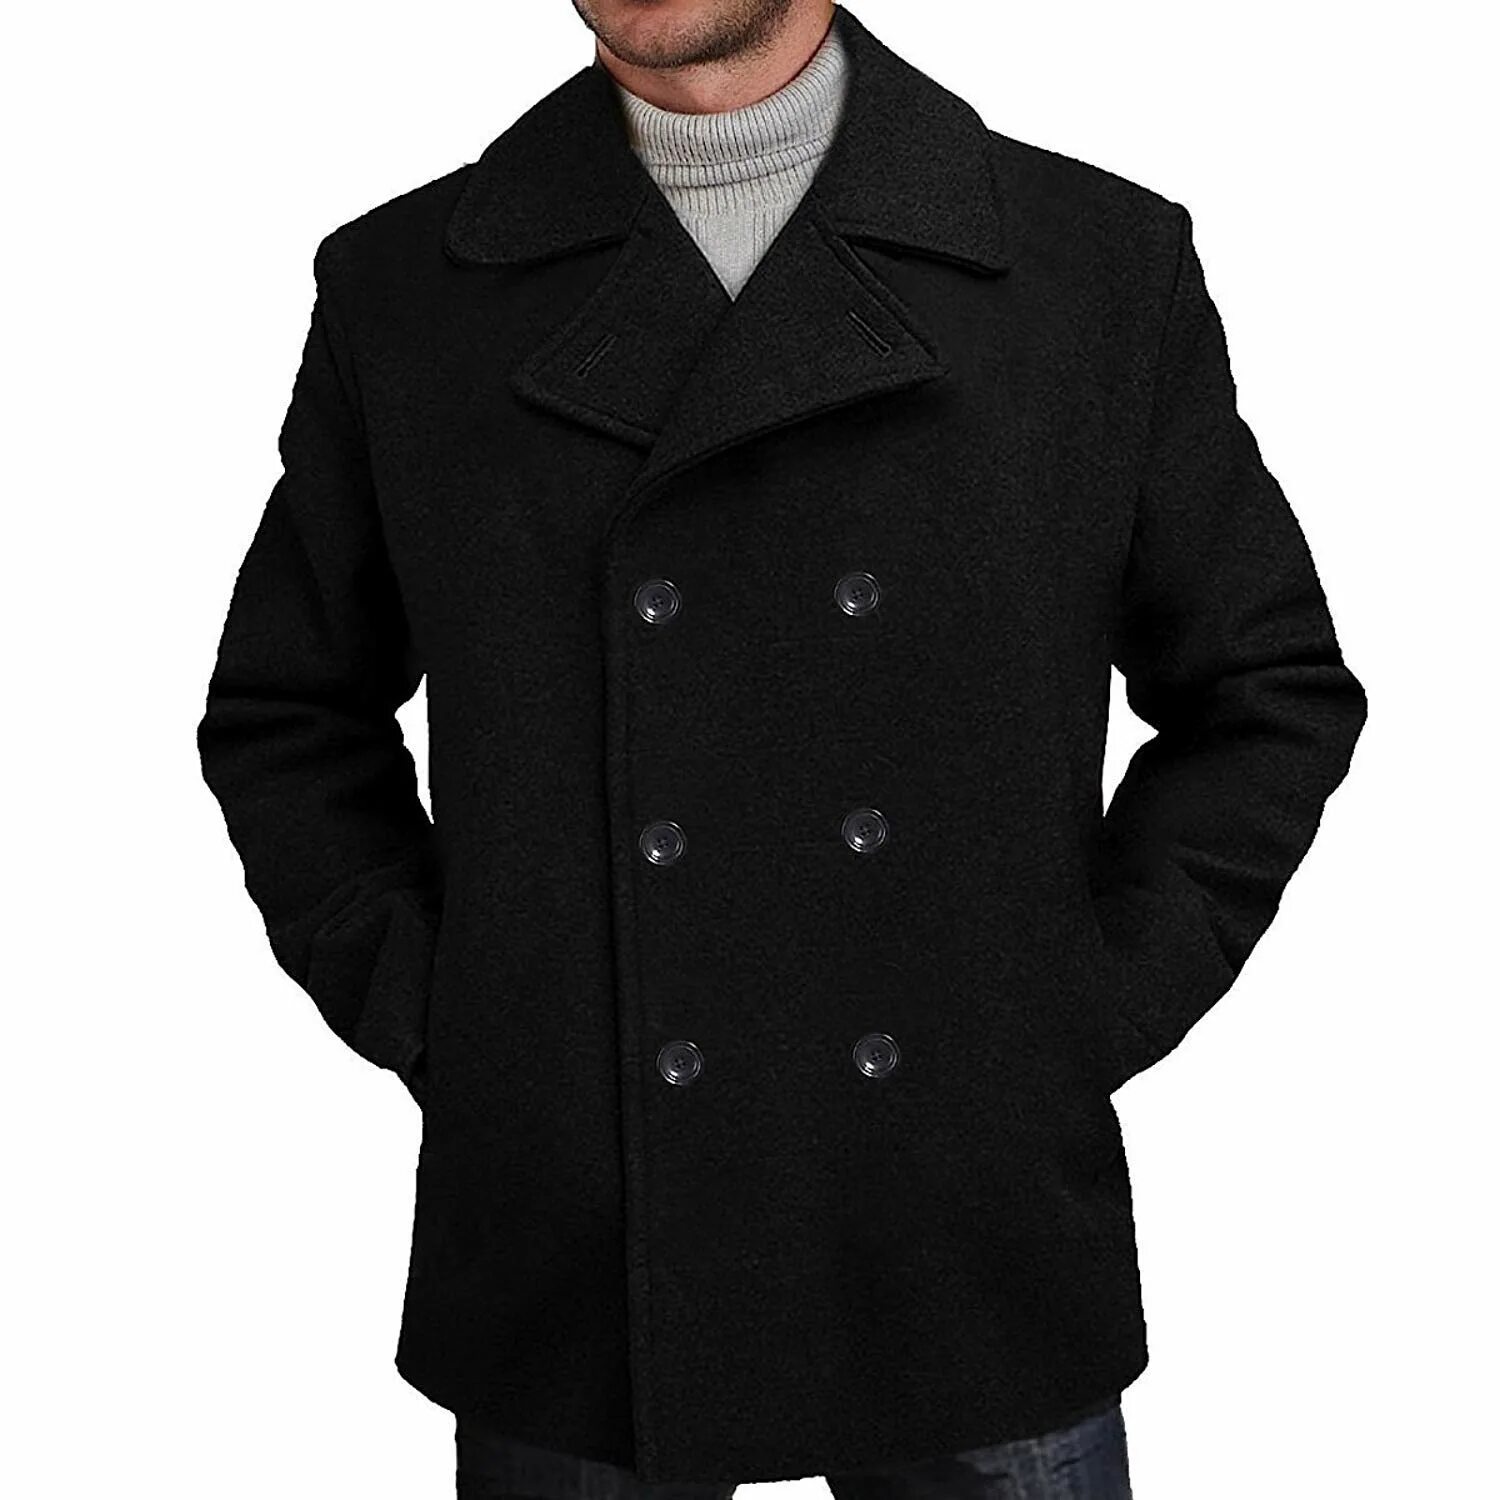 Купить бушлат. Бушлат Hugo Boss. Wool Blend Coat пальто мужское\. Пальто фирмы Avalon мужское бушлат. Бушлат мужской Хьюго босс.